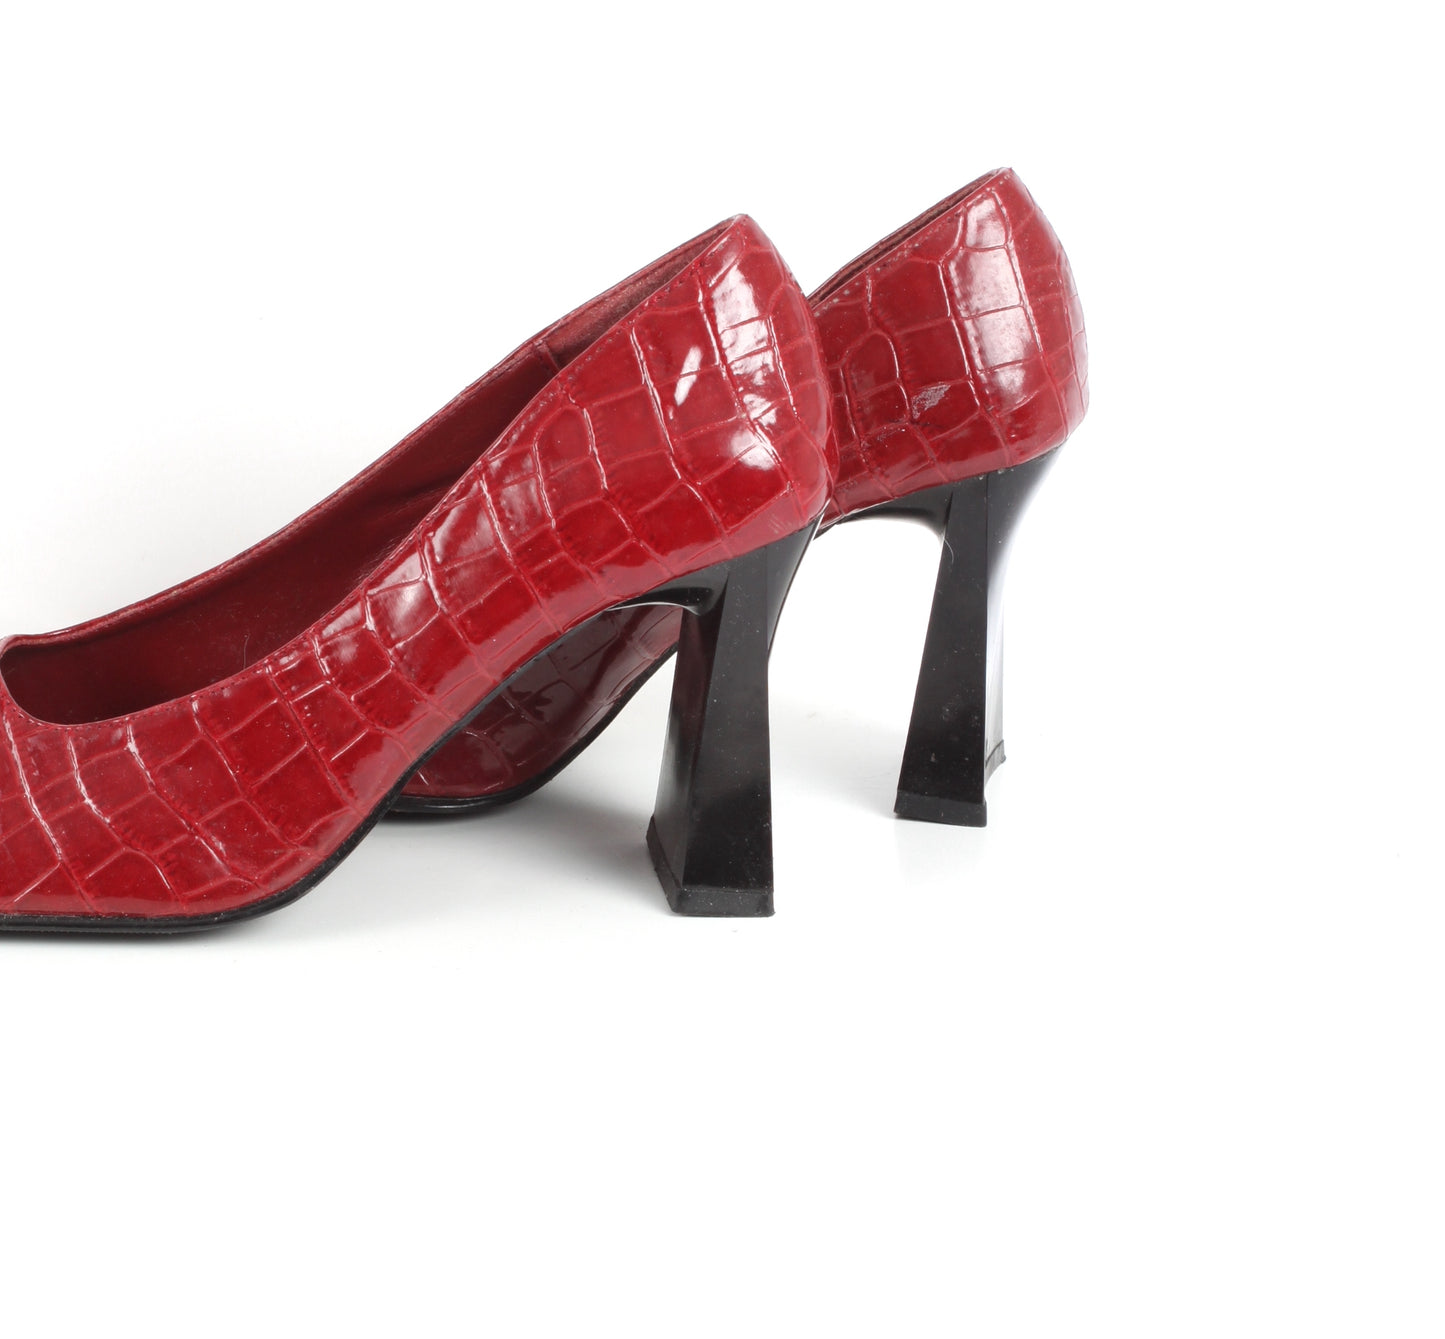 90s red pumps with black heel